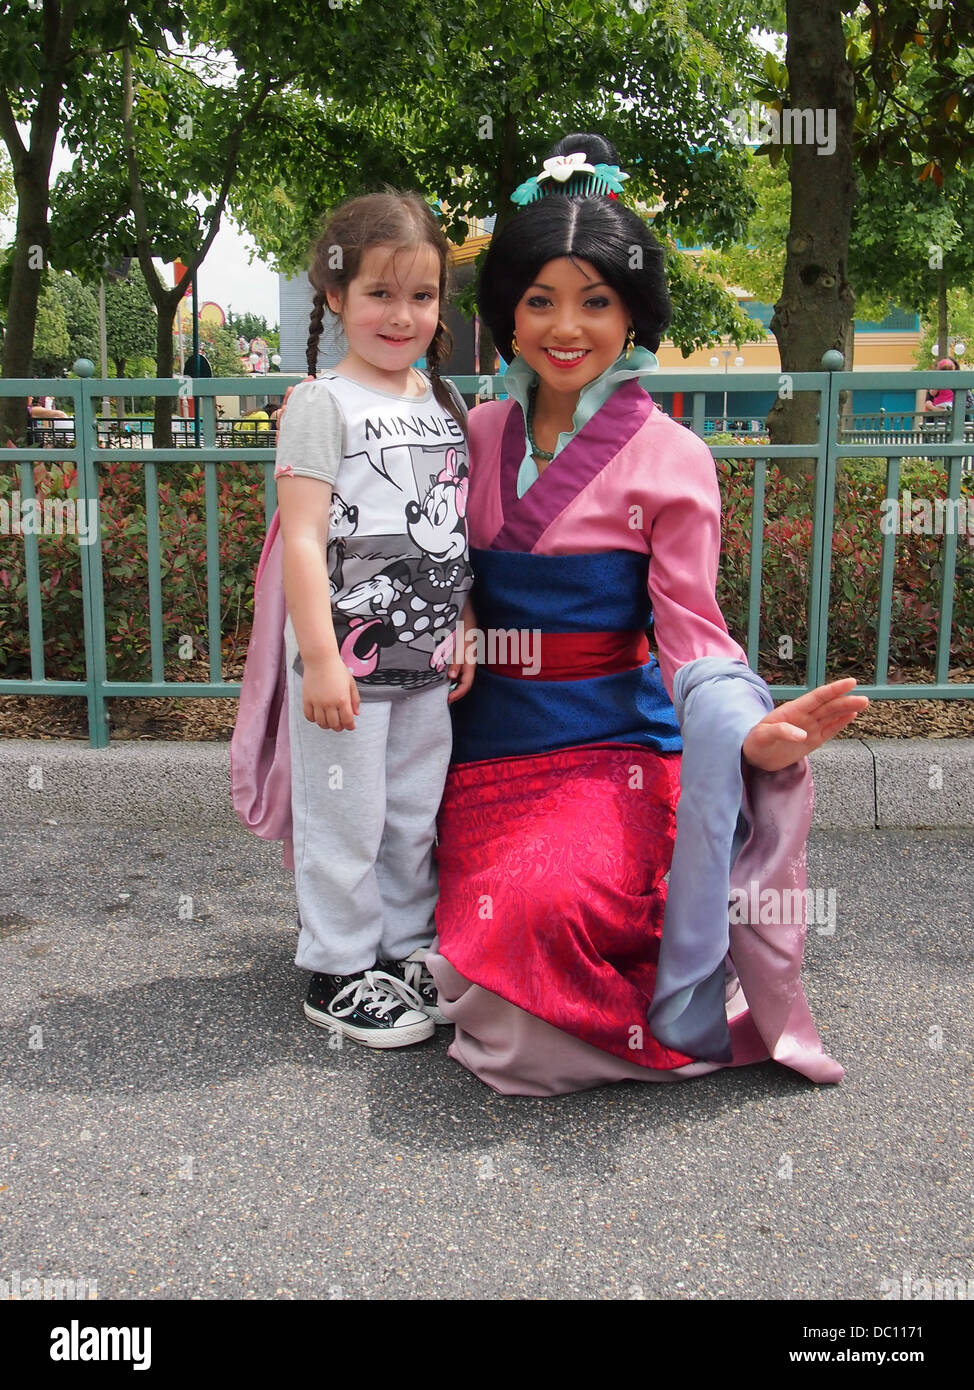 Princesse Disney Mulan pose avec une petite fille à Disneyland Paris en France Banque D'Images